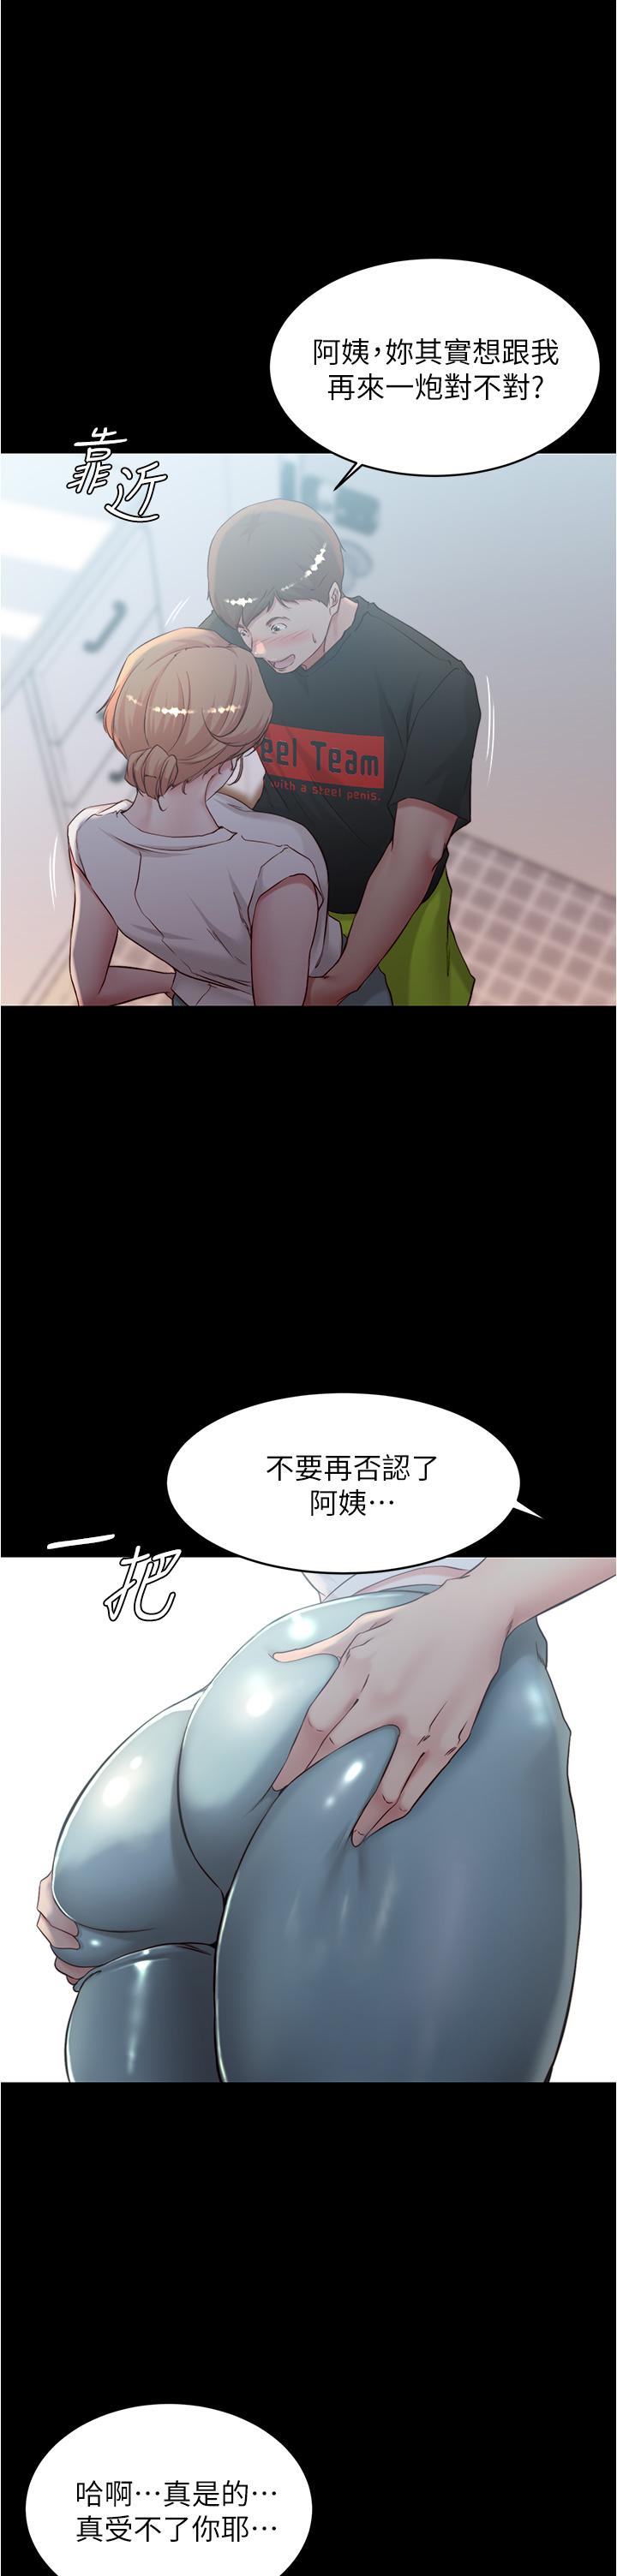 《小褲褲筆記》在线观看 第37话-开始跟张惠桦同居 漫画图片1